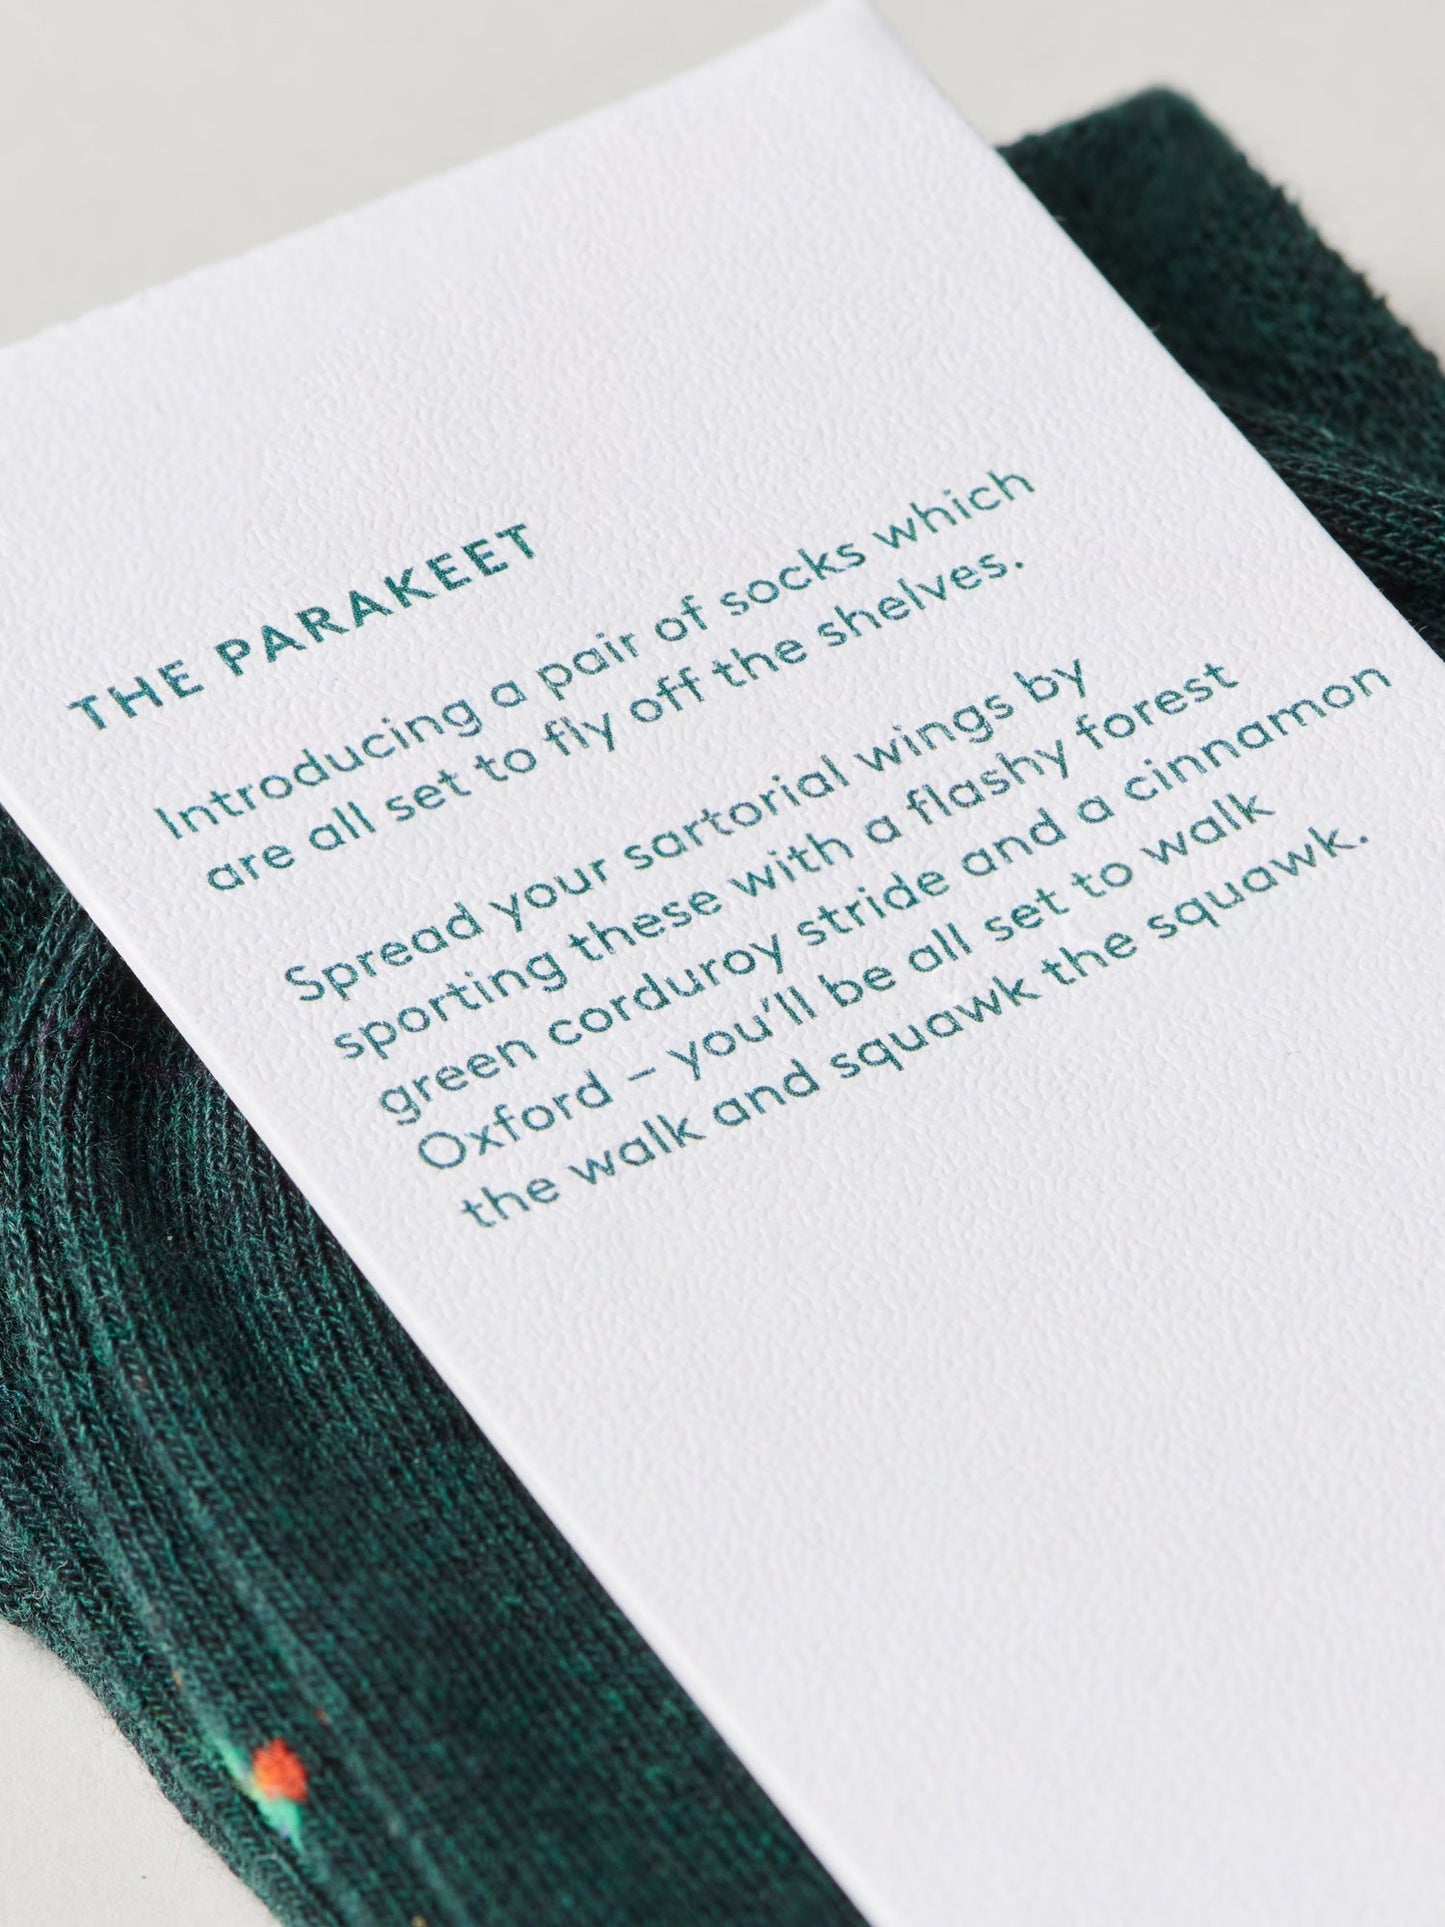 The Parakeet Socks